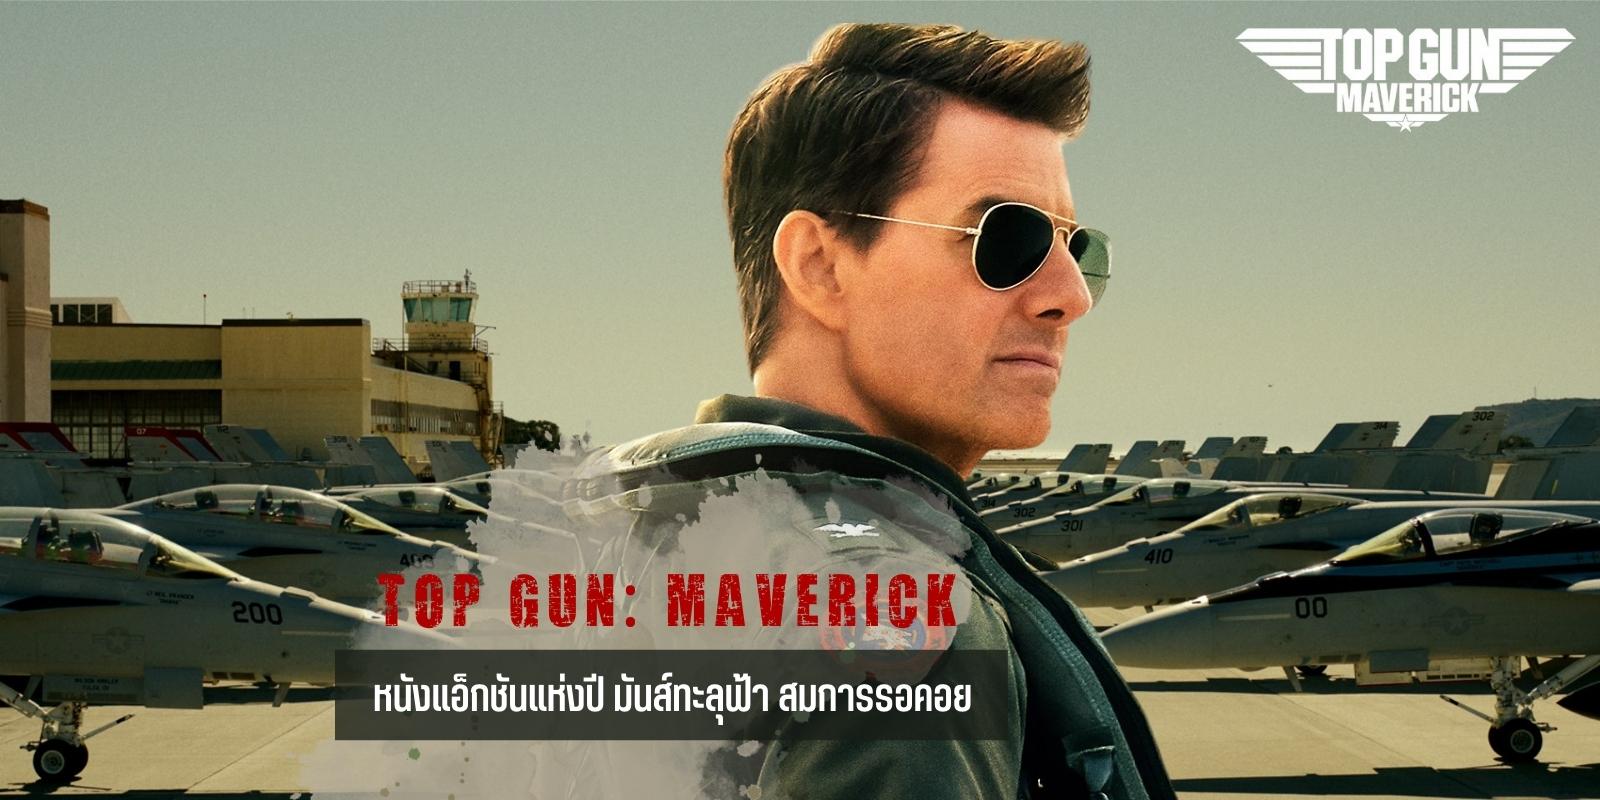 รีวิว Top Gun: Maverick หนังแอ็กชันแห่งปี มันส์ทะลุฟ้า โคตรคุ้มค่าต่อการรอคอย 